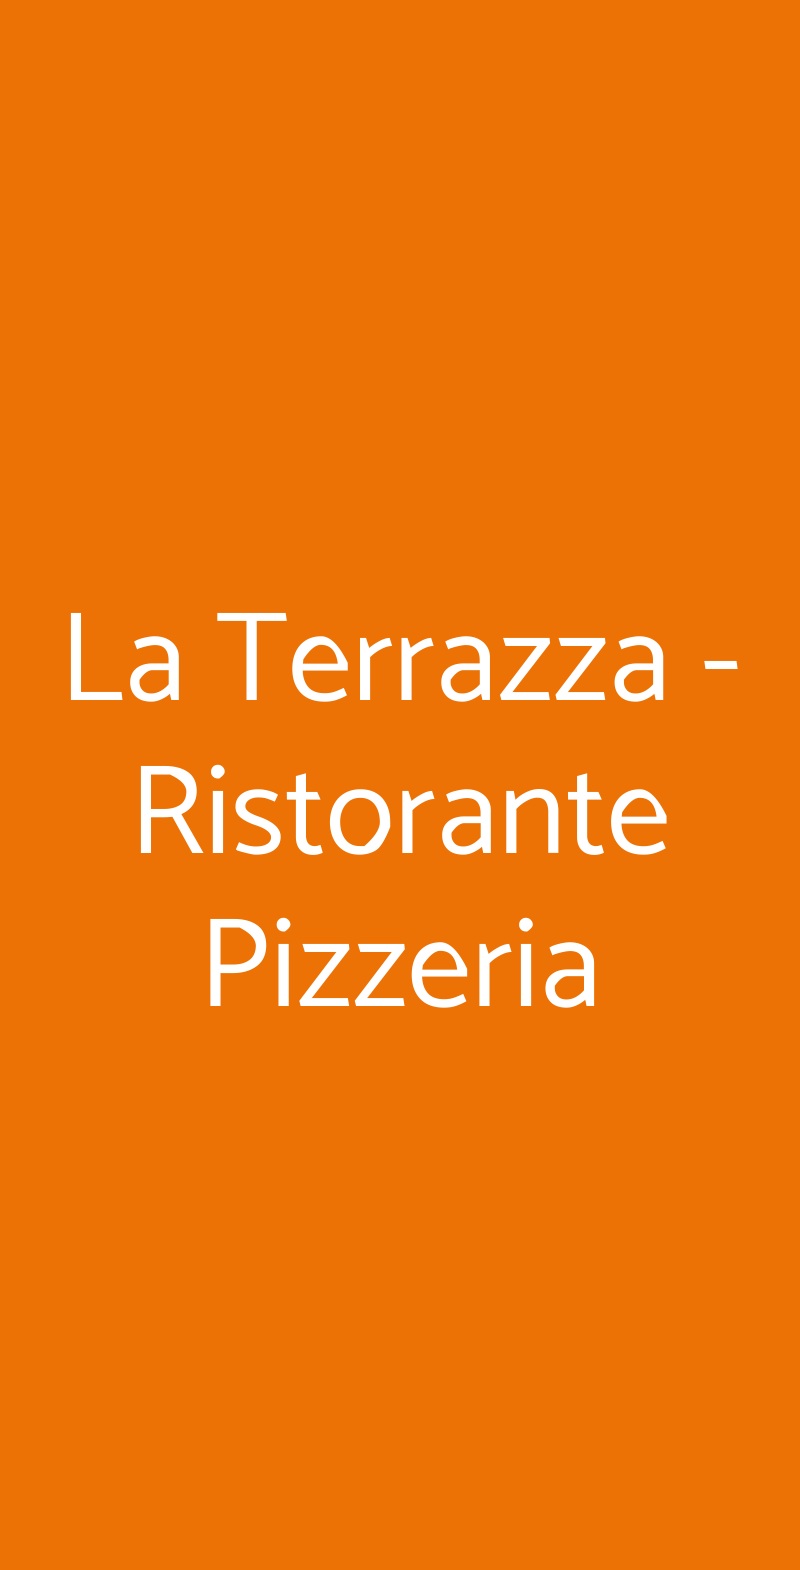 La Terrazza - Ristorante Pizzeria Sasso Marconi menù 1 pagina